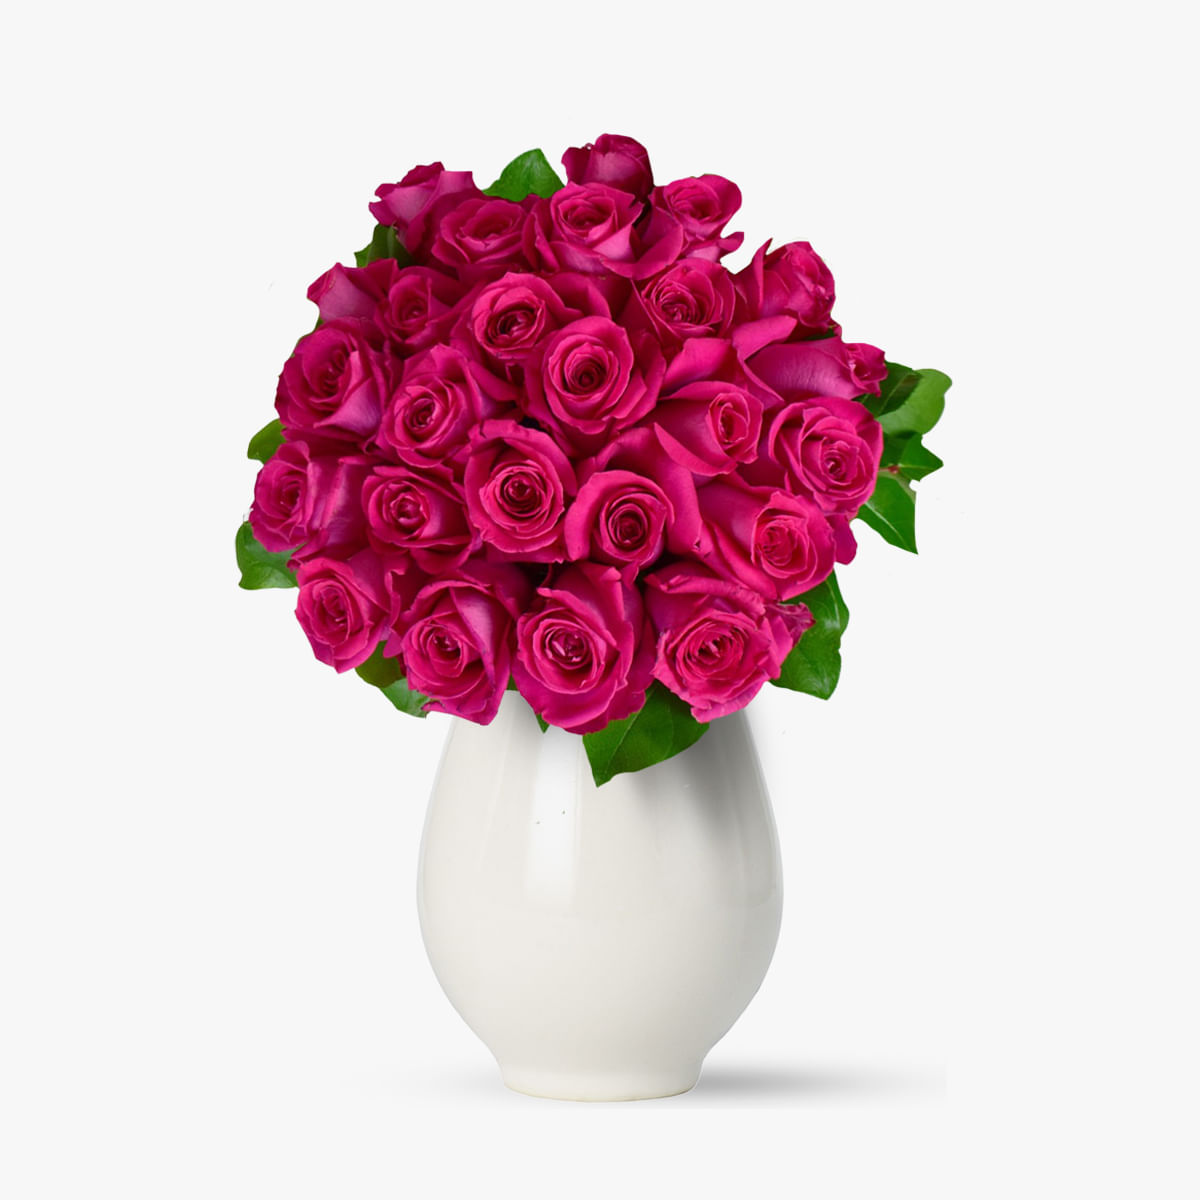 Aranjament in forma de inima cu 18 trandafiri rosii si 15 crizanteme albe Floria